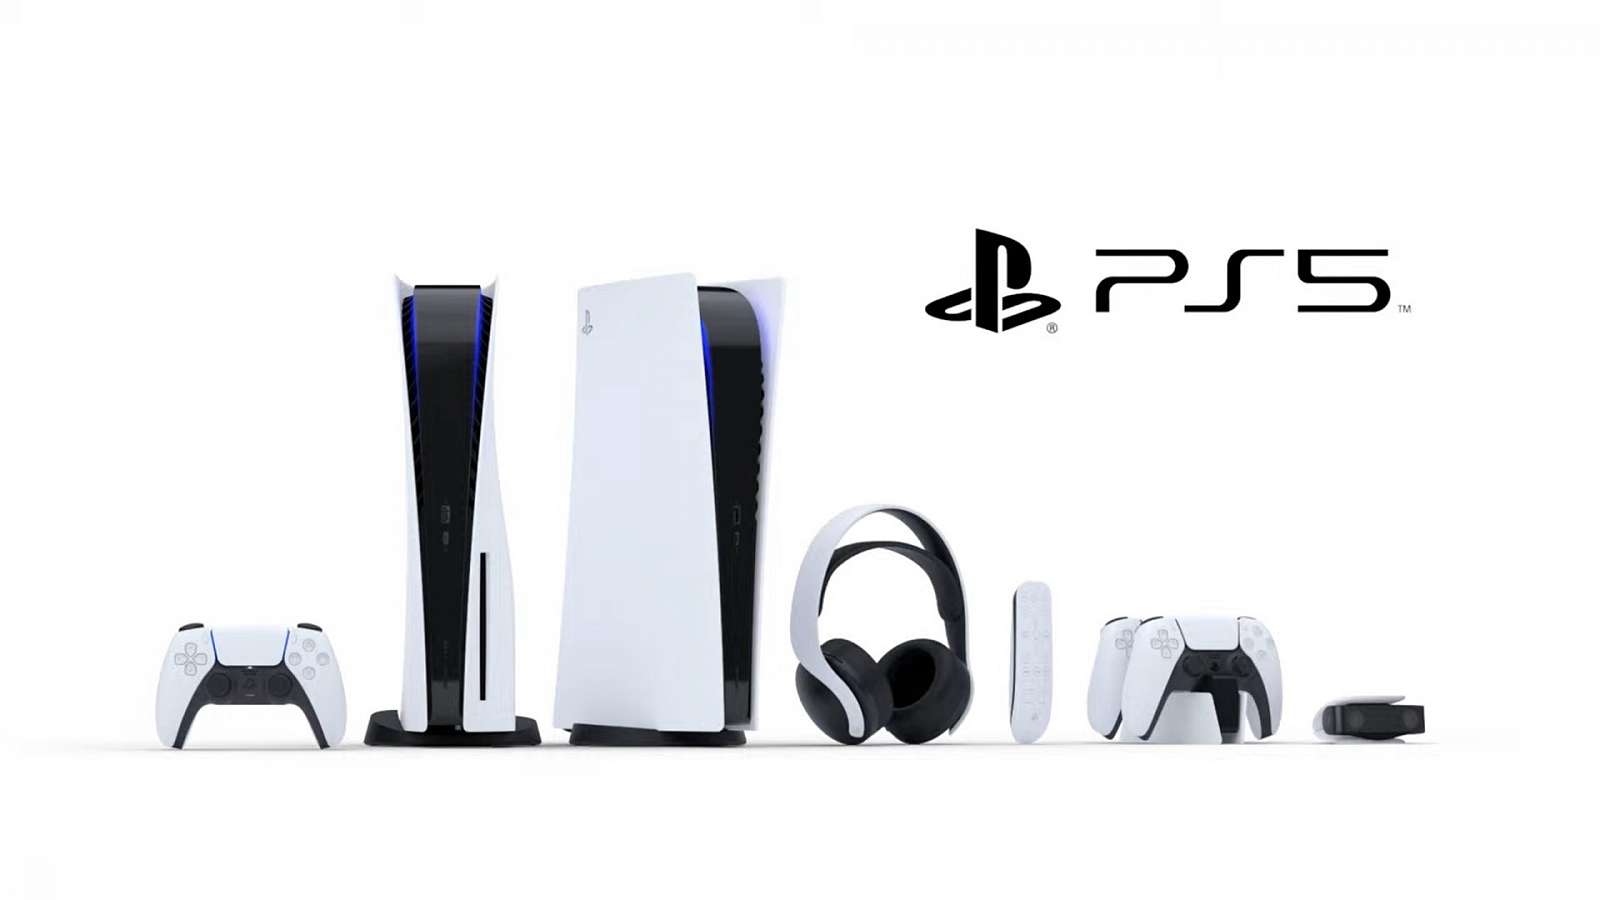 Takto vypadá Playstation 5 - vzhled konzole, příslušenství a specifikace